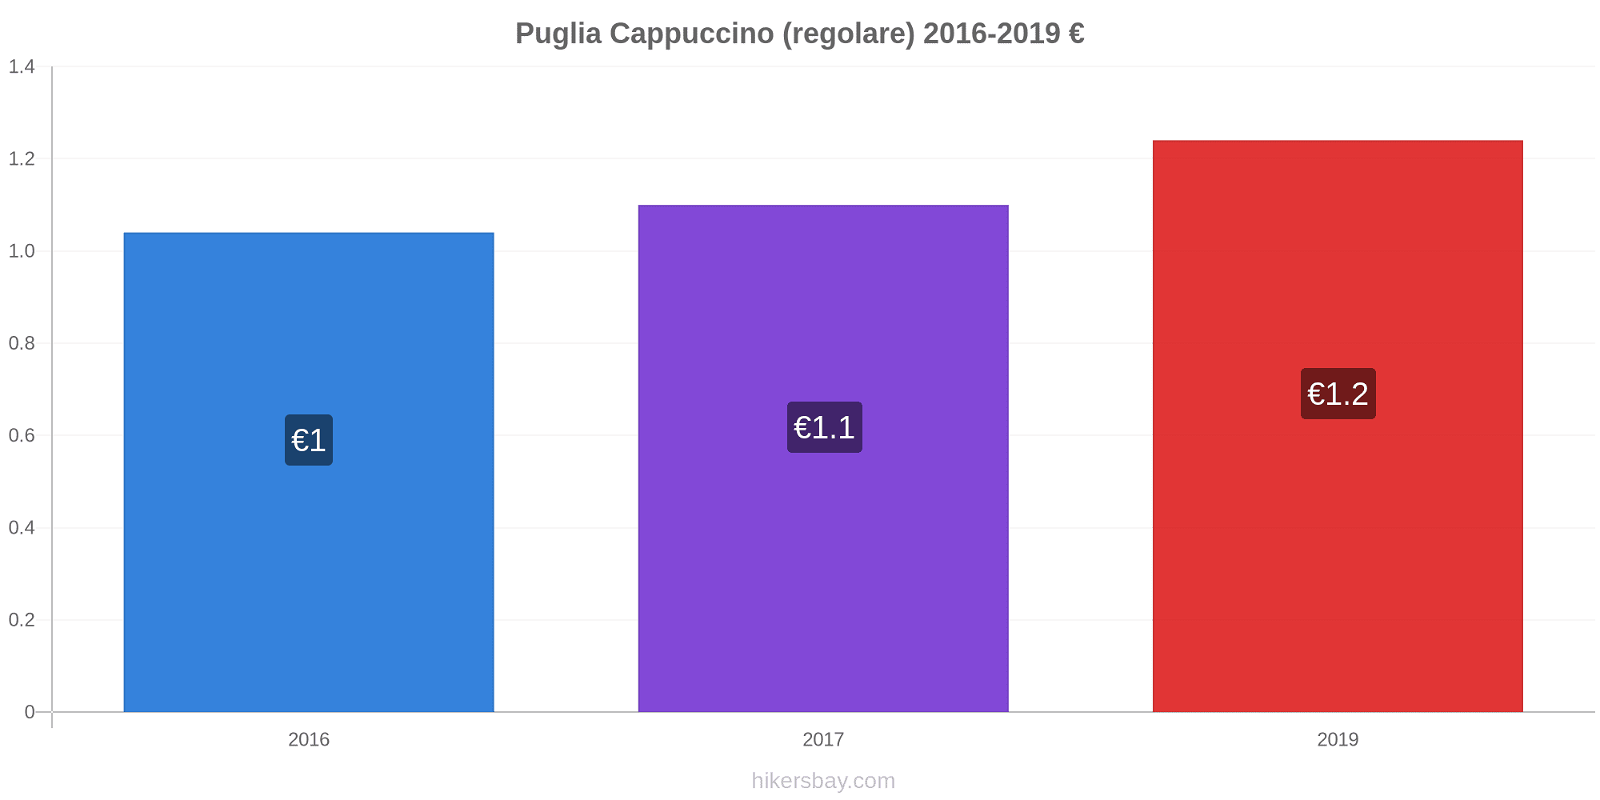 Puglia variazioni di prezzo Cappuccino (normale) hikersbay.com